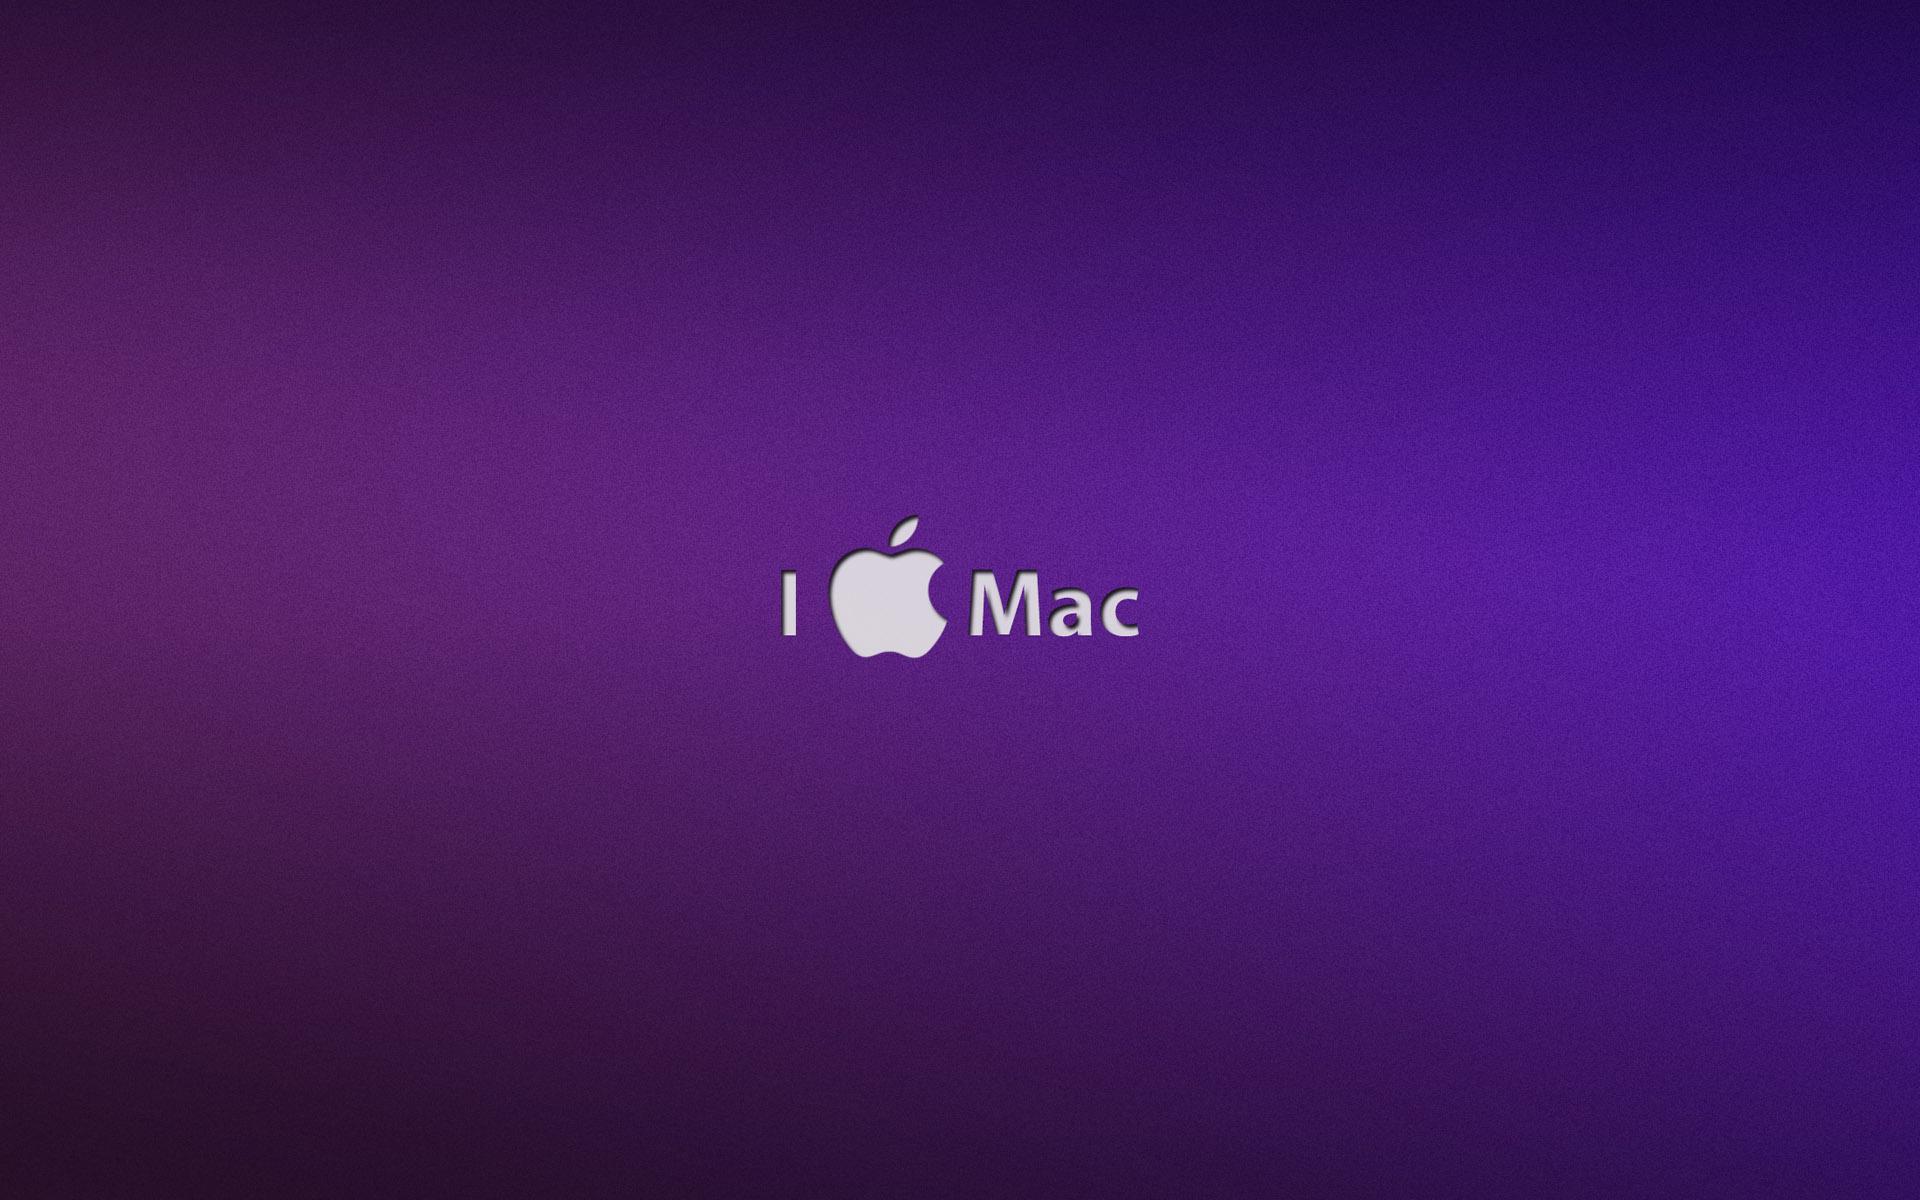 Apple, mac desktop PC and Mac wallpaper